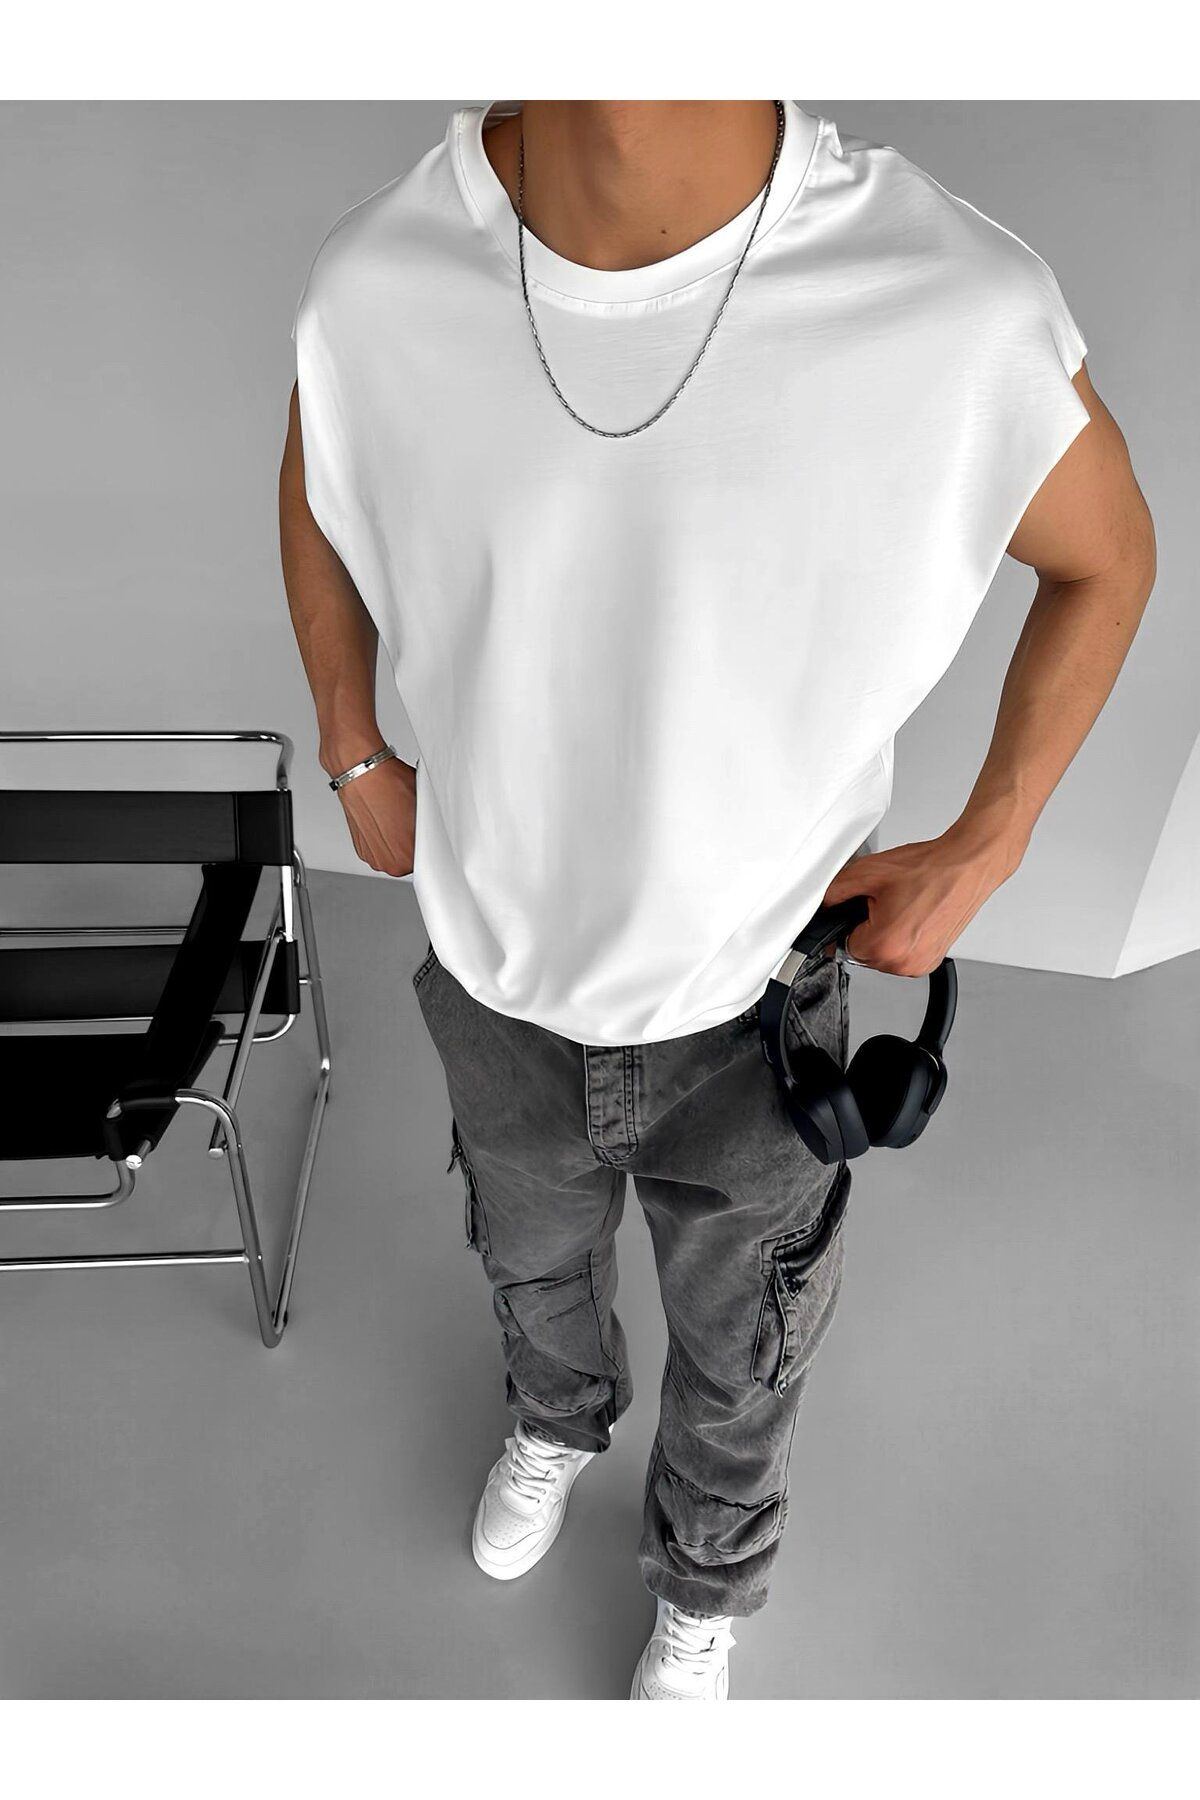 ablikaonline Oversize текстурированная футболка без рукавов с круглым вырезом, белая TST.0194